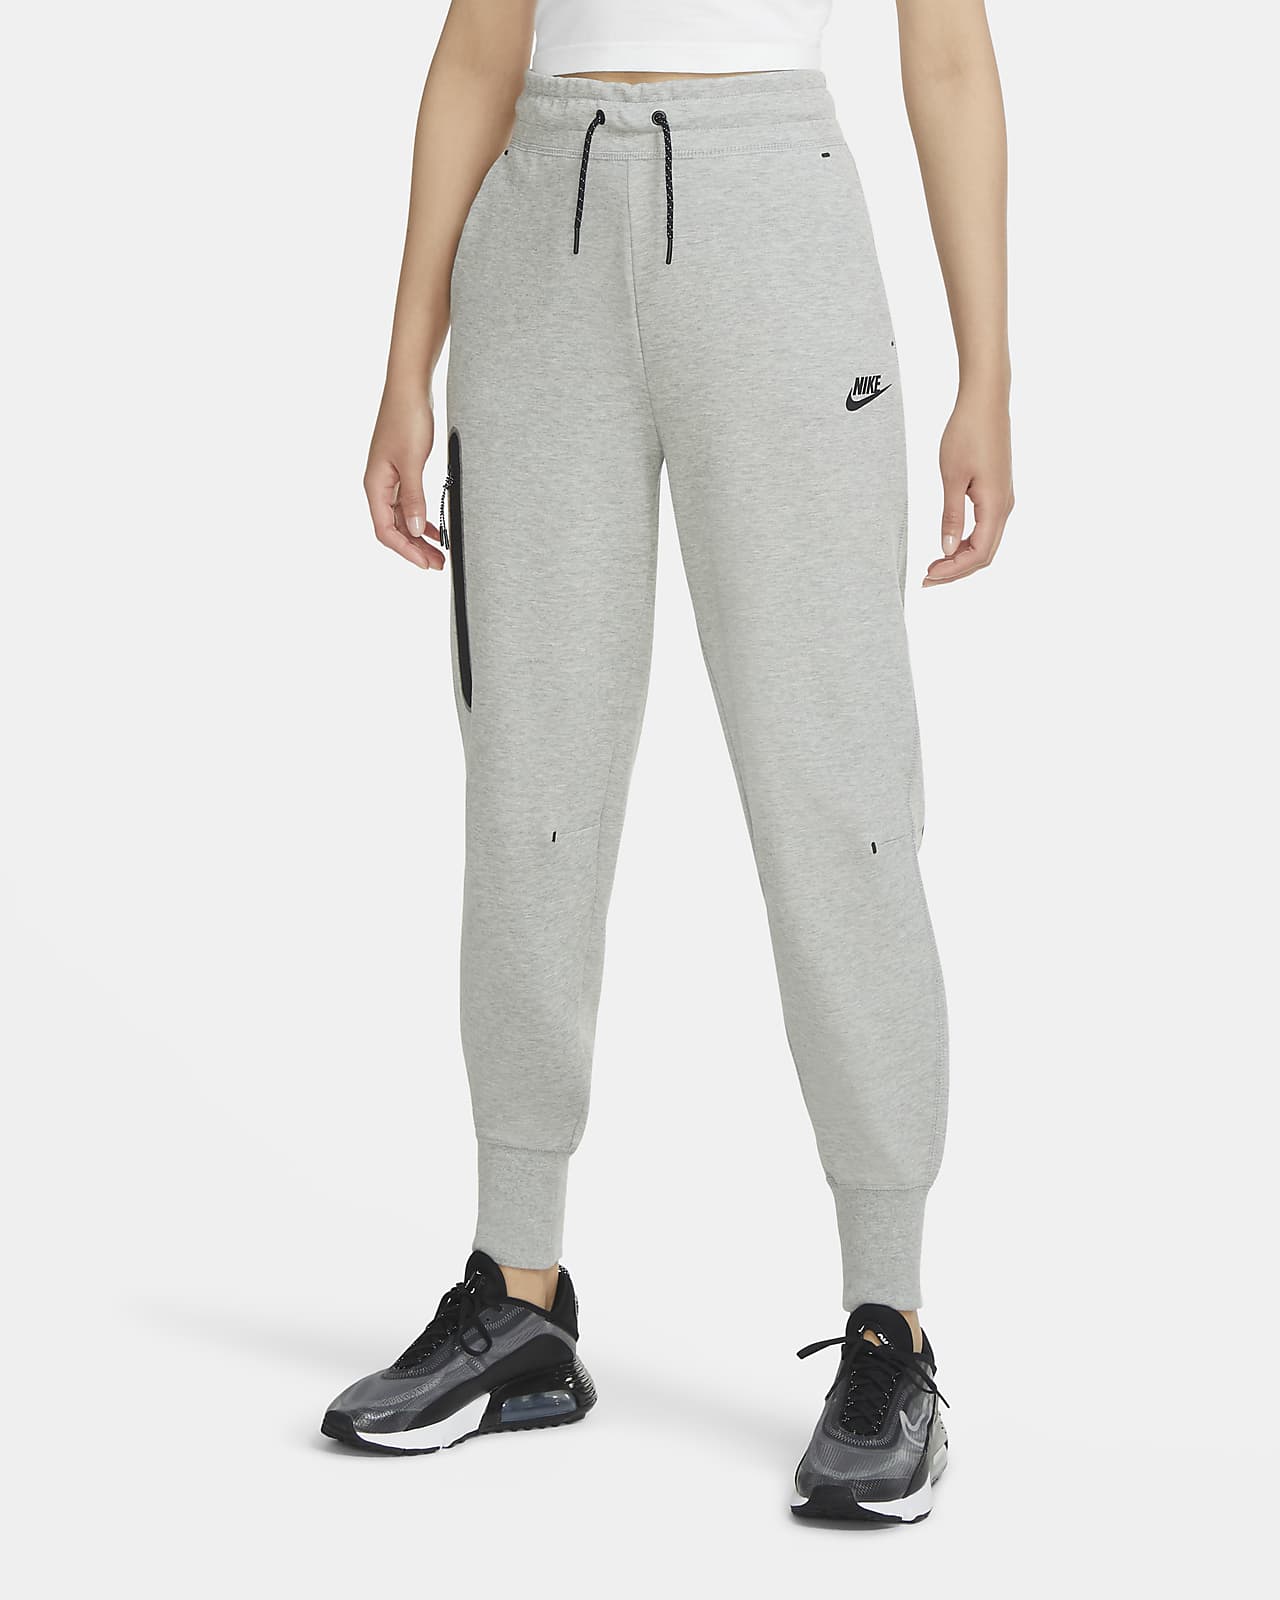 Nike Sportswear Tech Fleece 女款運動褲